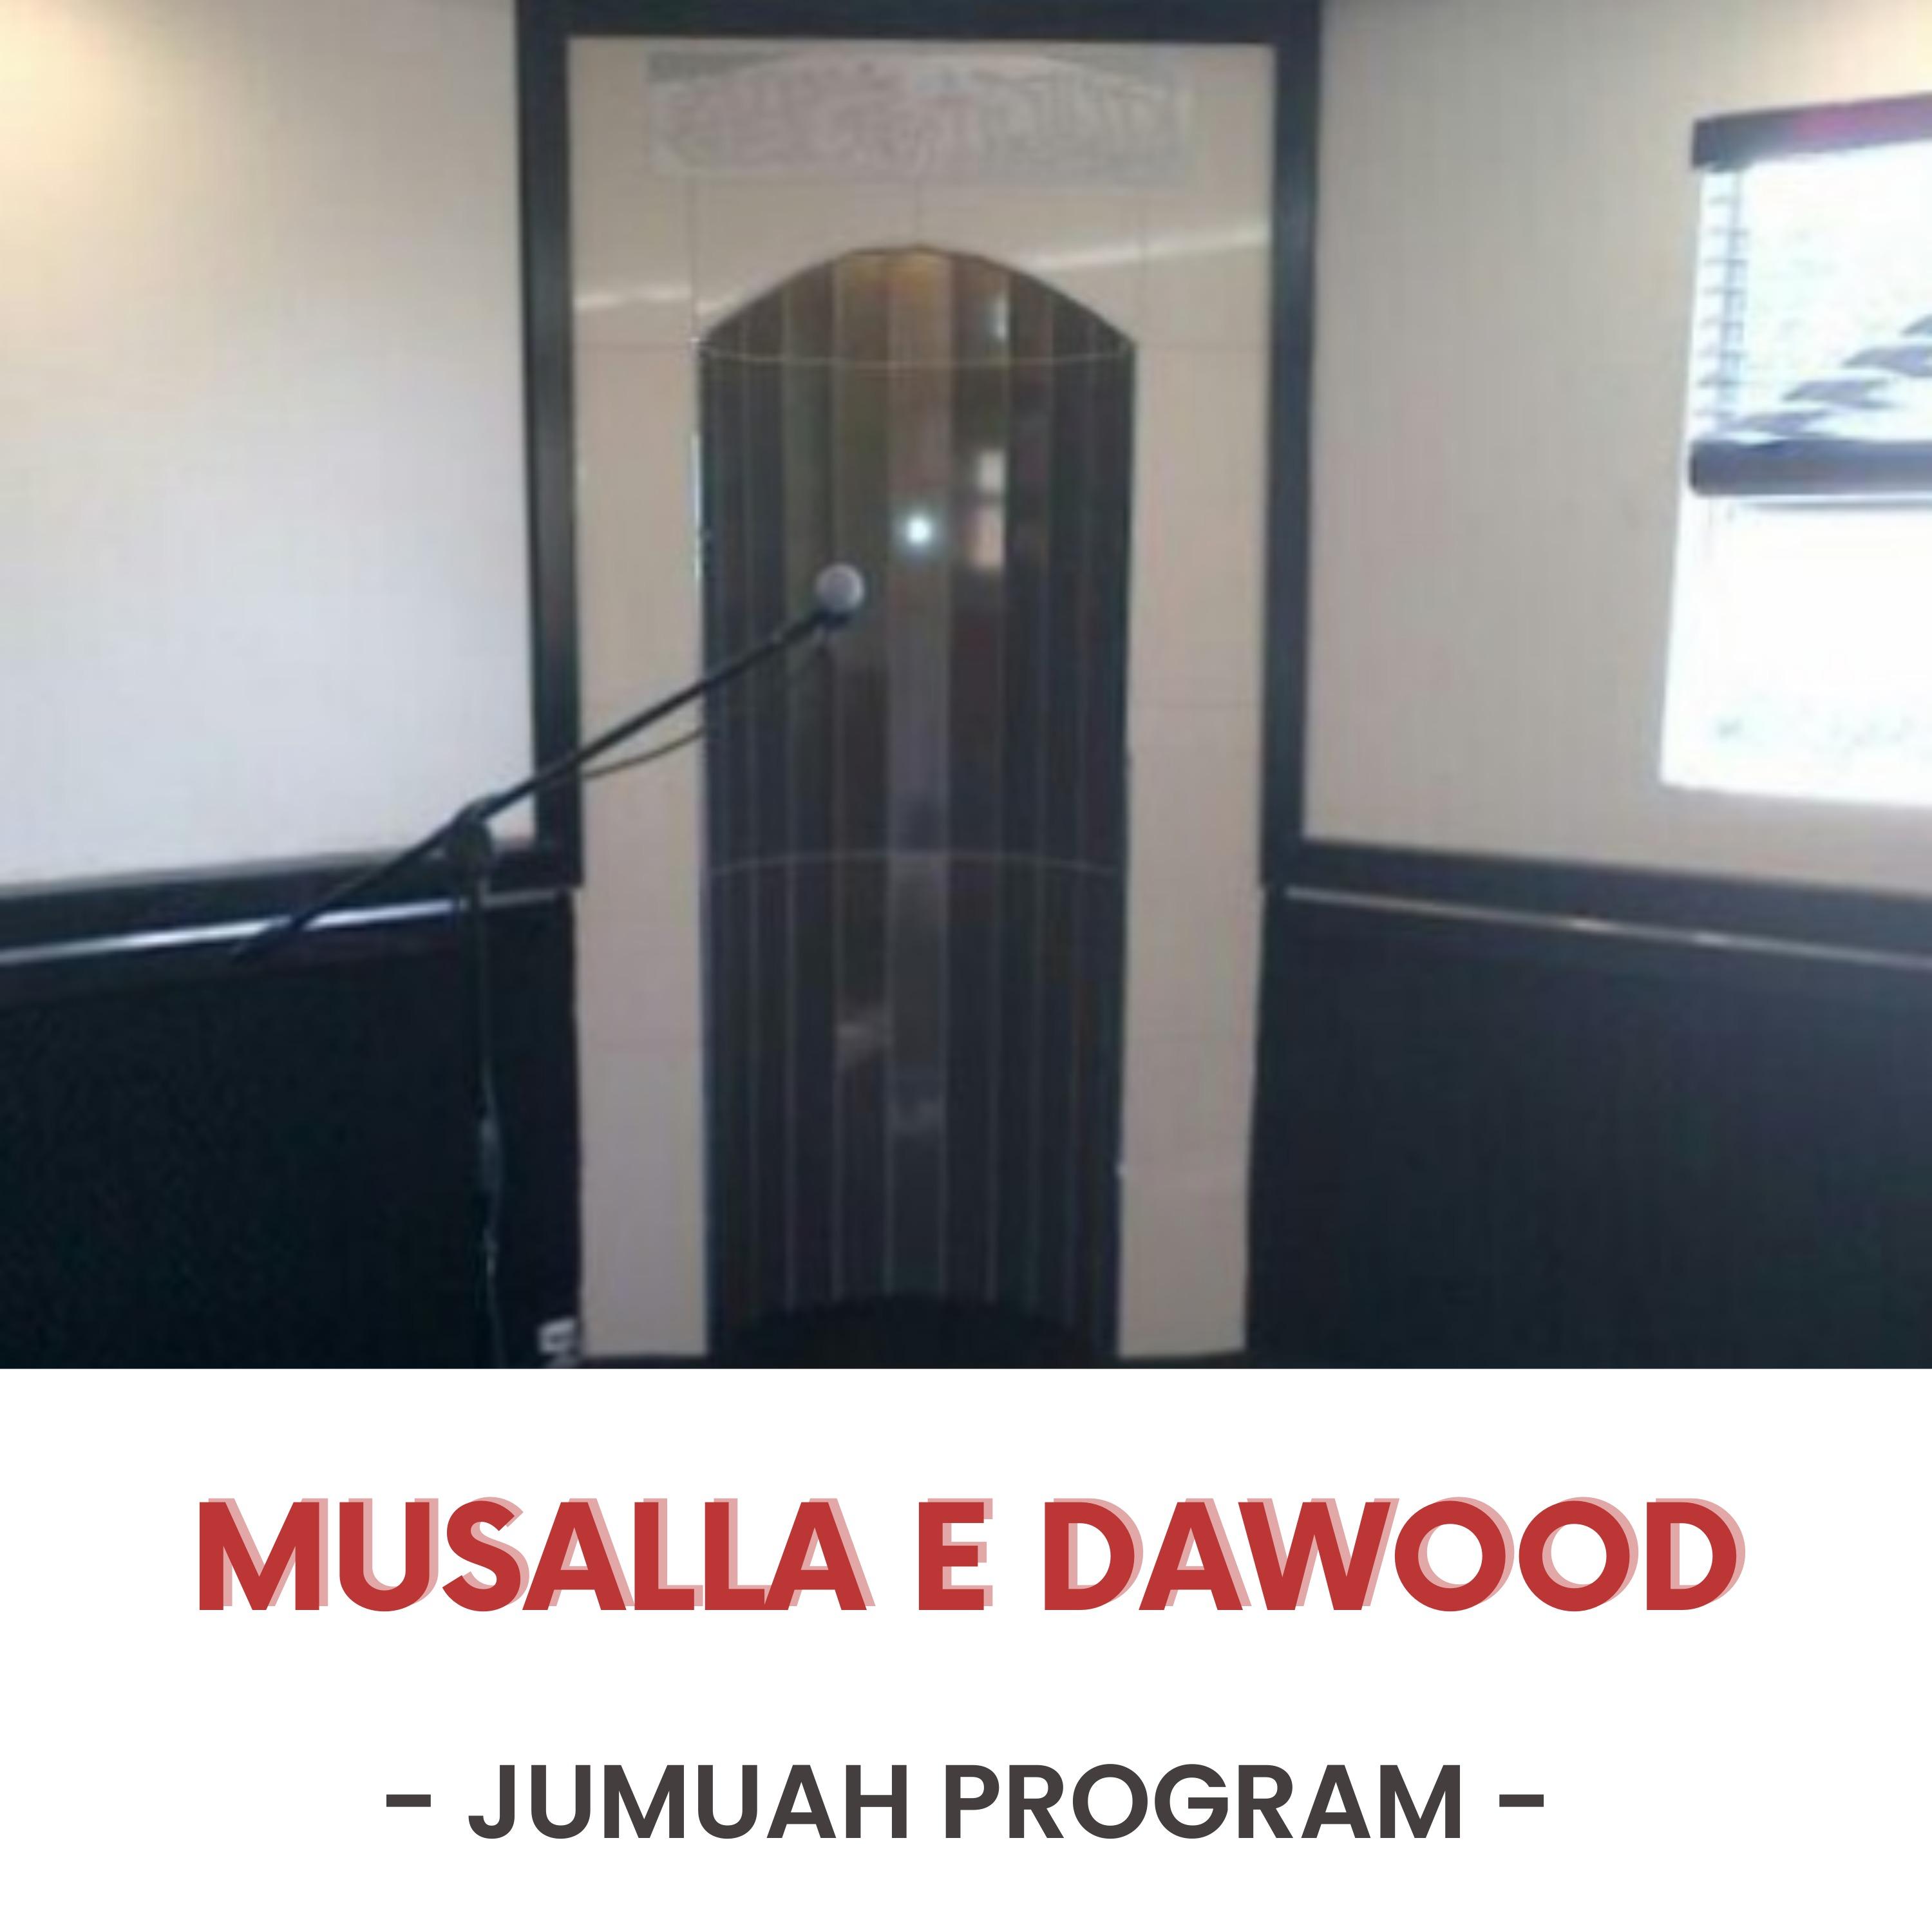 Musalla e Dawood